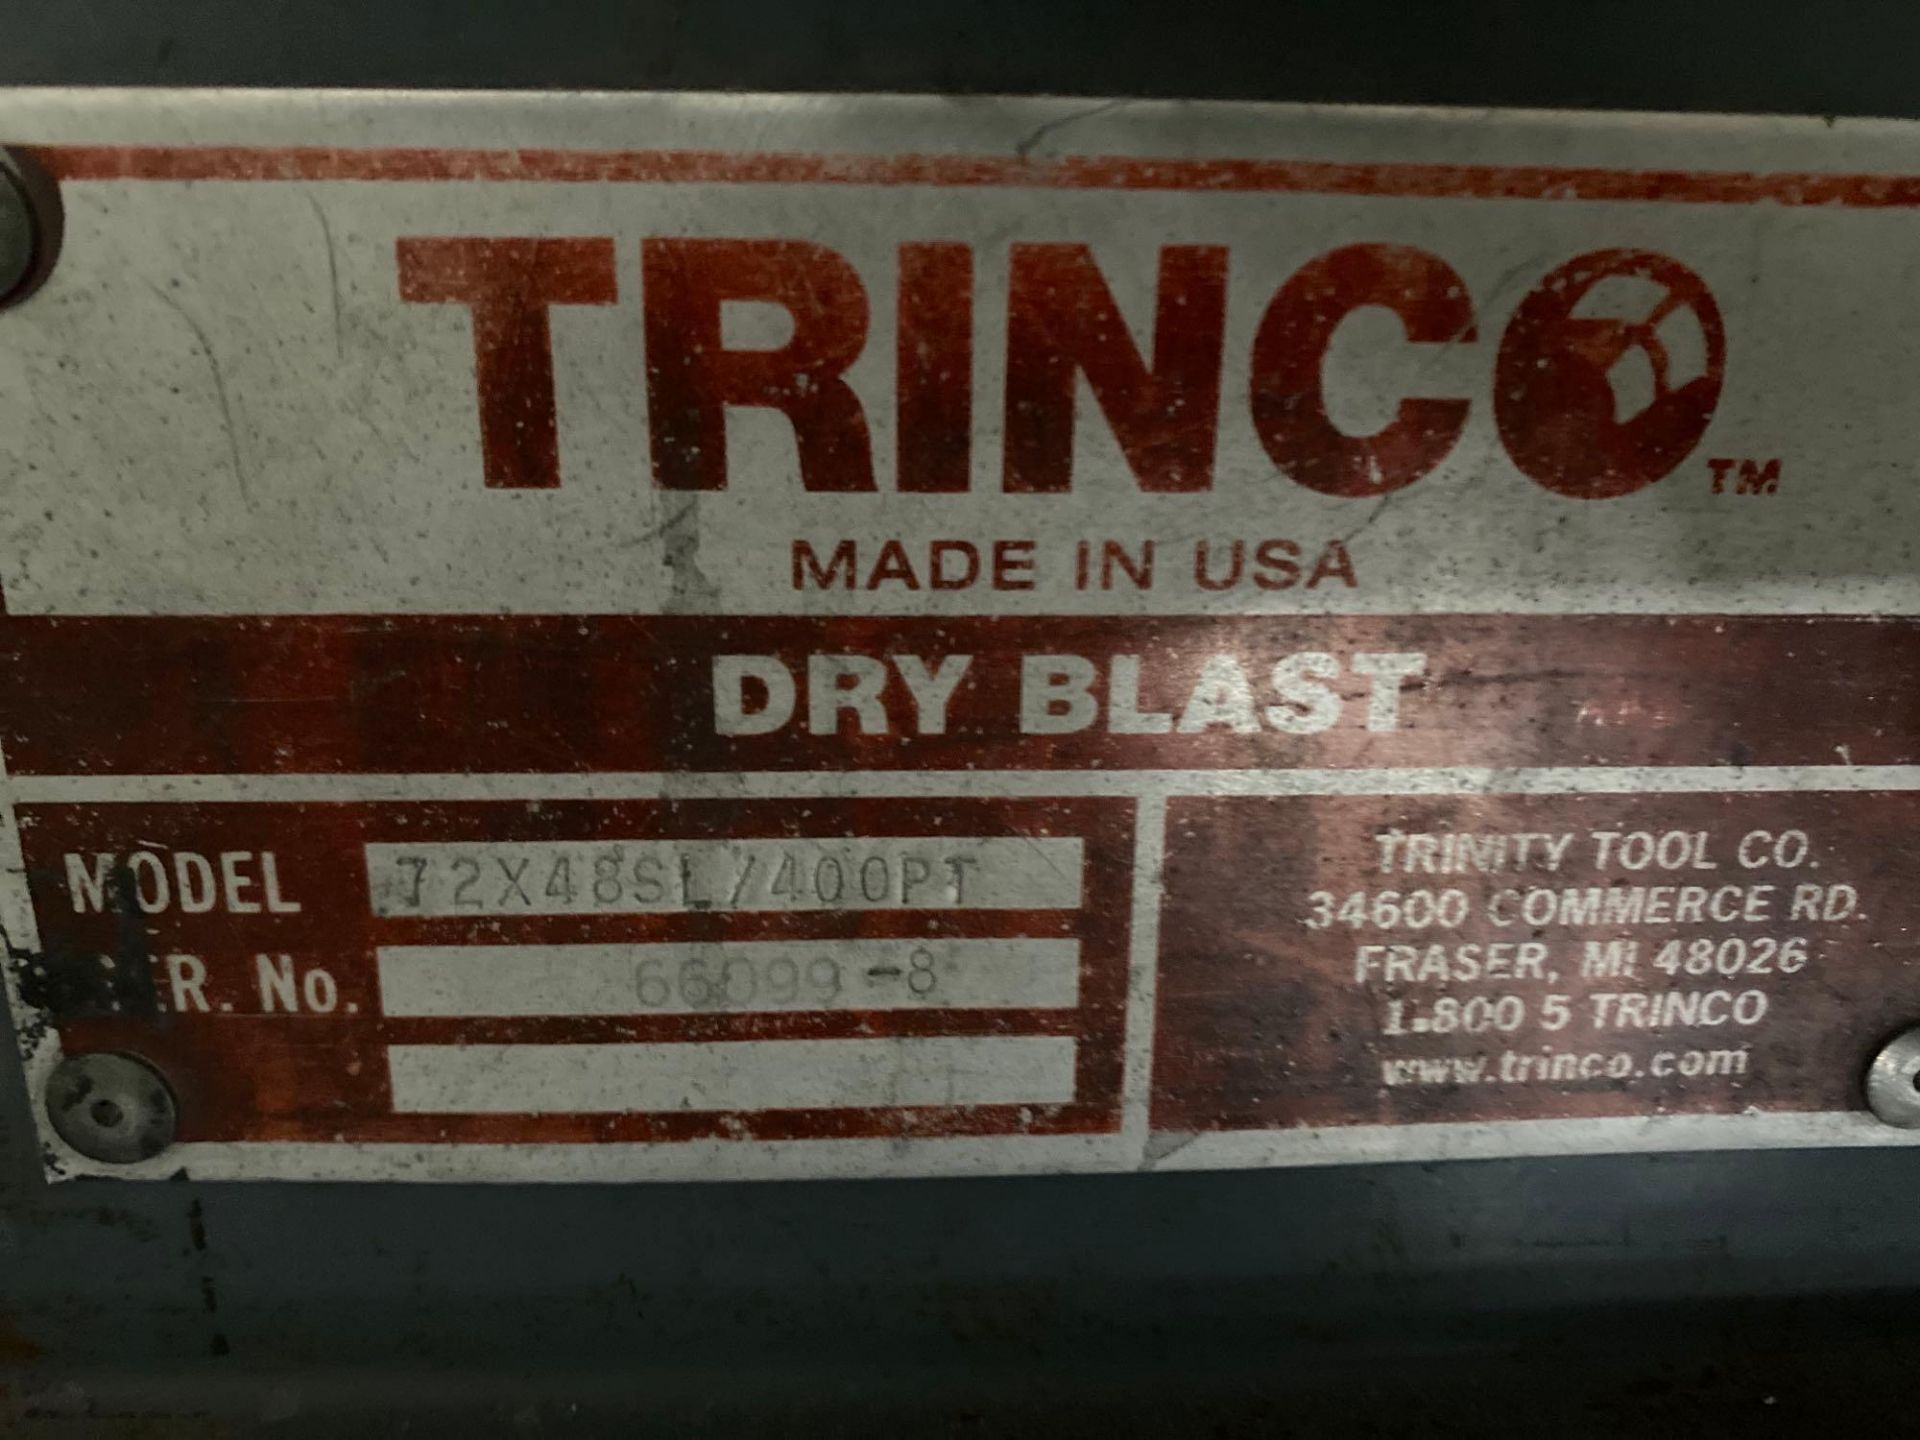 Trinco 72X48SL/400PT Abrasive Media Blast Cabinet - Image 4 of 4